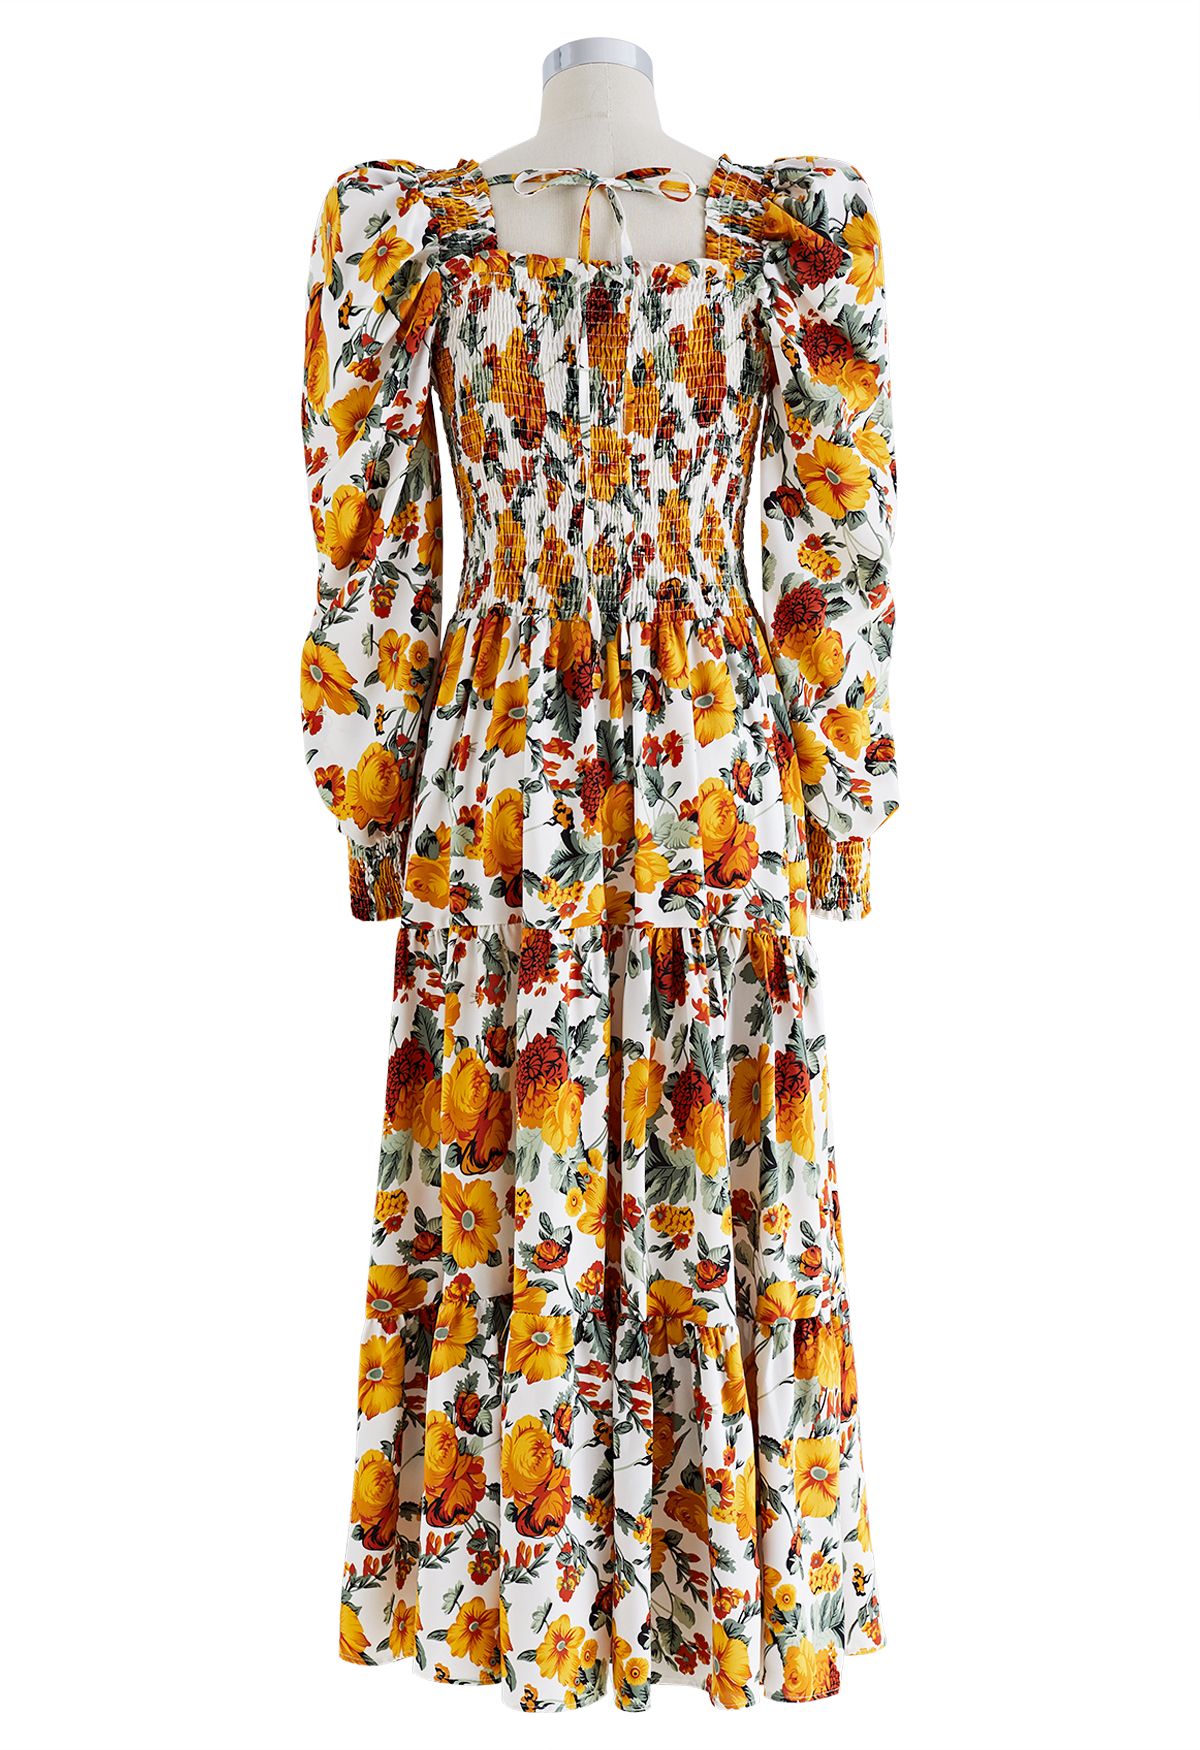 Vestido maxi de chiffon com franzido floral efervescente em laranja